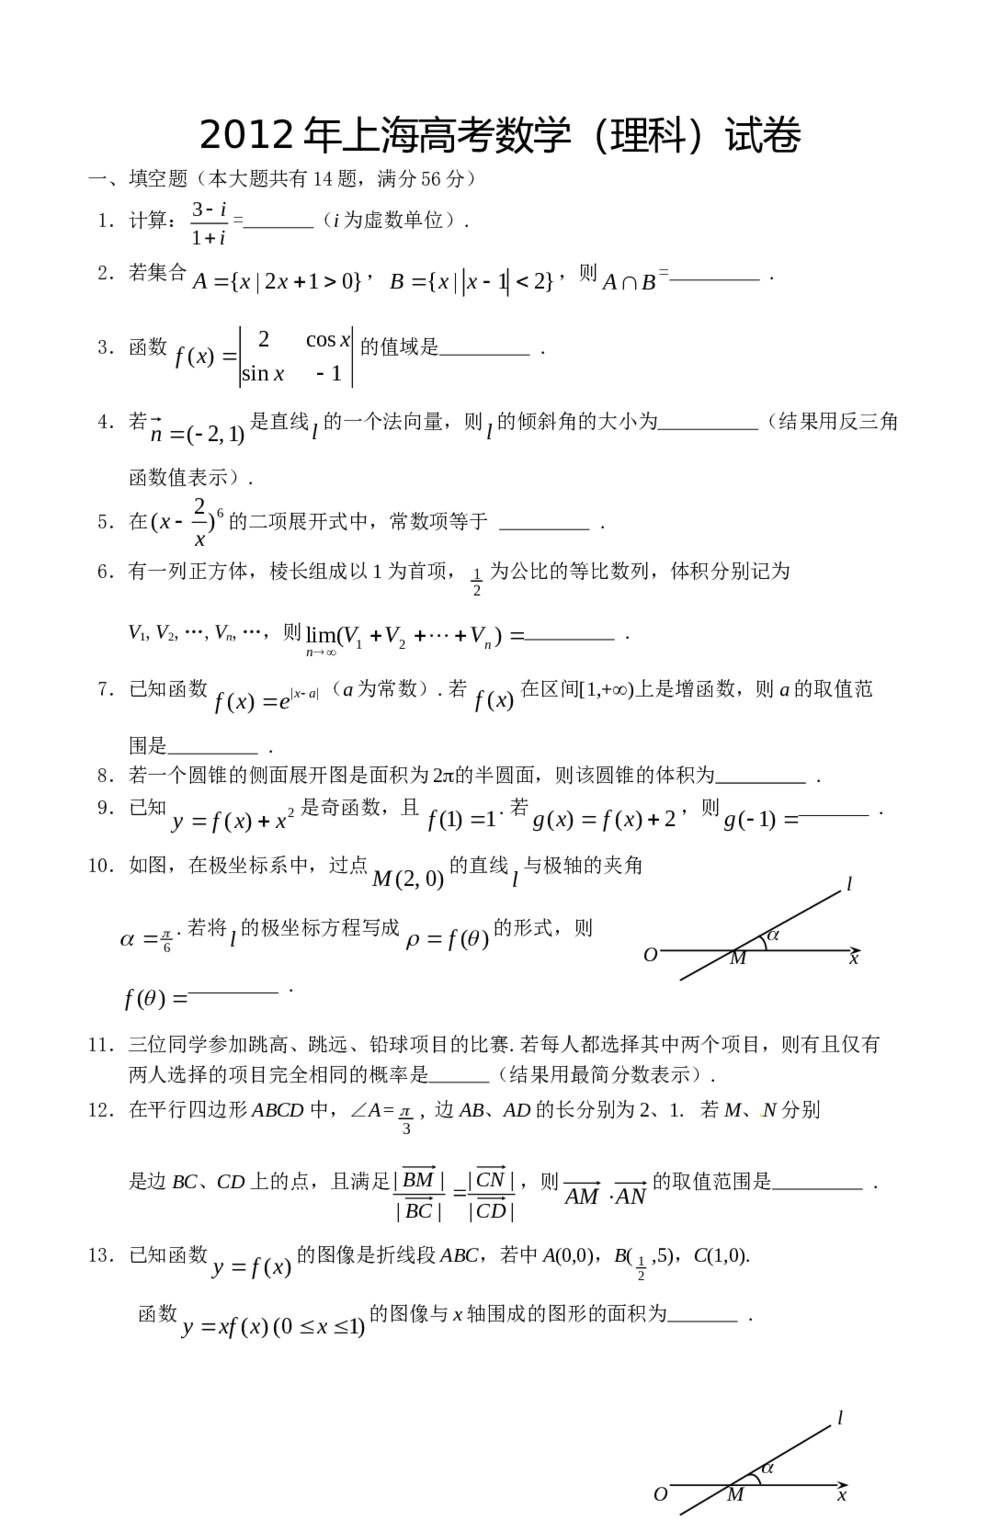 2012年上海高考数学(理科)试卷+解答